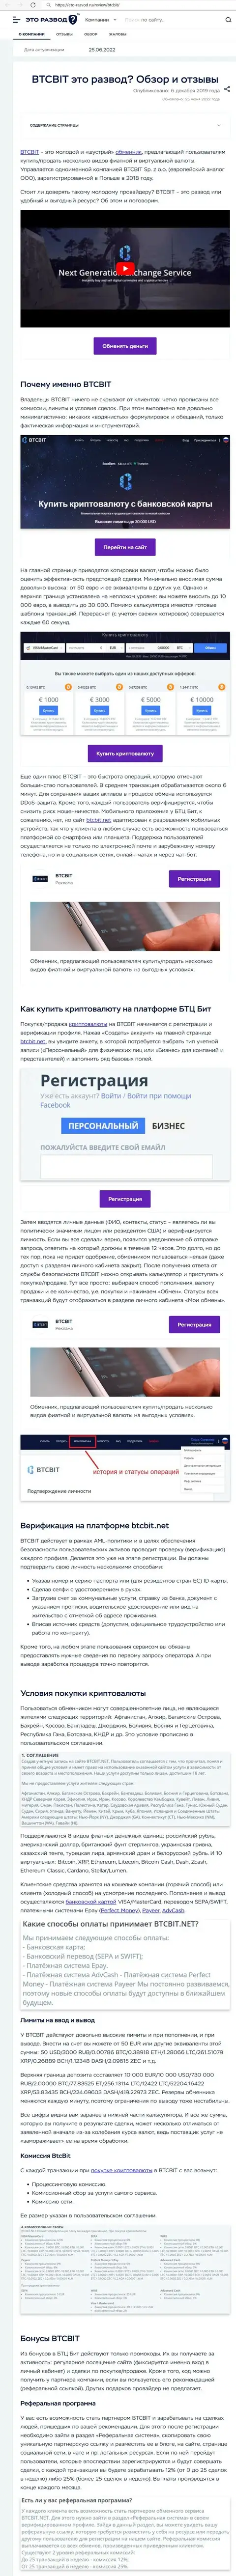 Обзор деятельности и условия предоставления услуг обменного пункта BTCBit в обзорной статье на сайте Eto-Razvod Ru